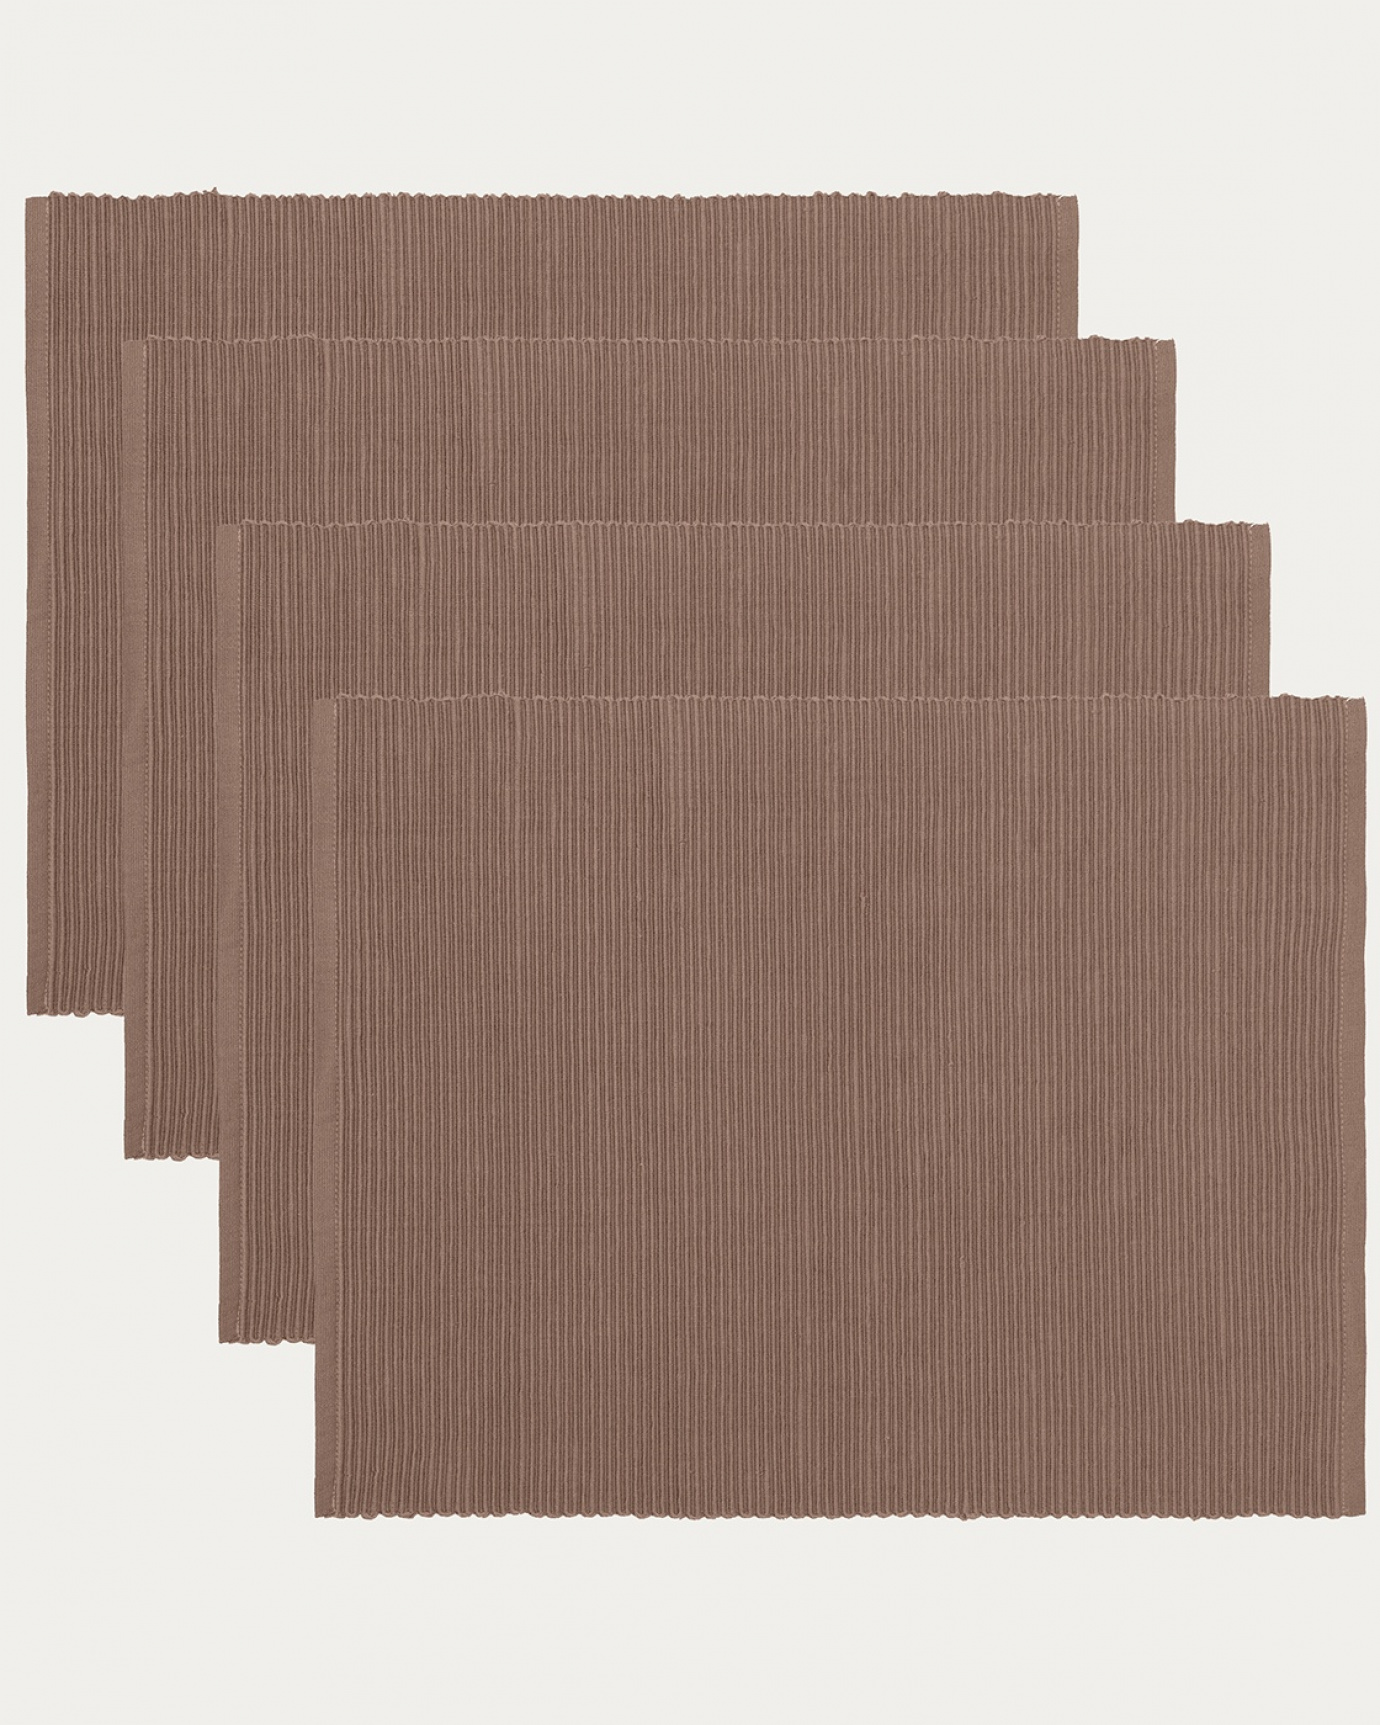 Immagine prodotto marrone talpa scuro tovaglietta UNI in morbido cotone a costine di qualità di LINUM DESIGN. Dimensioni 35x46 cm e venduto in 4-pezzi.